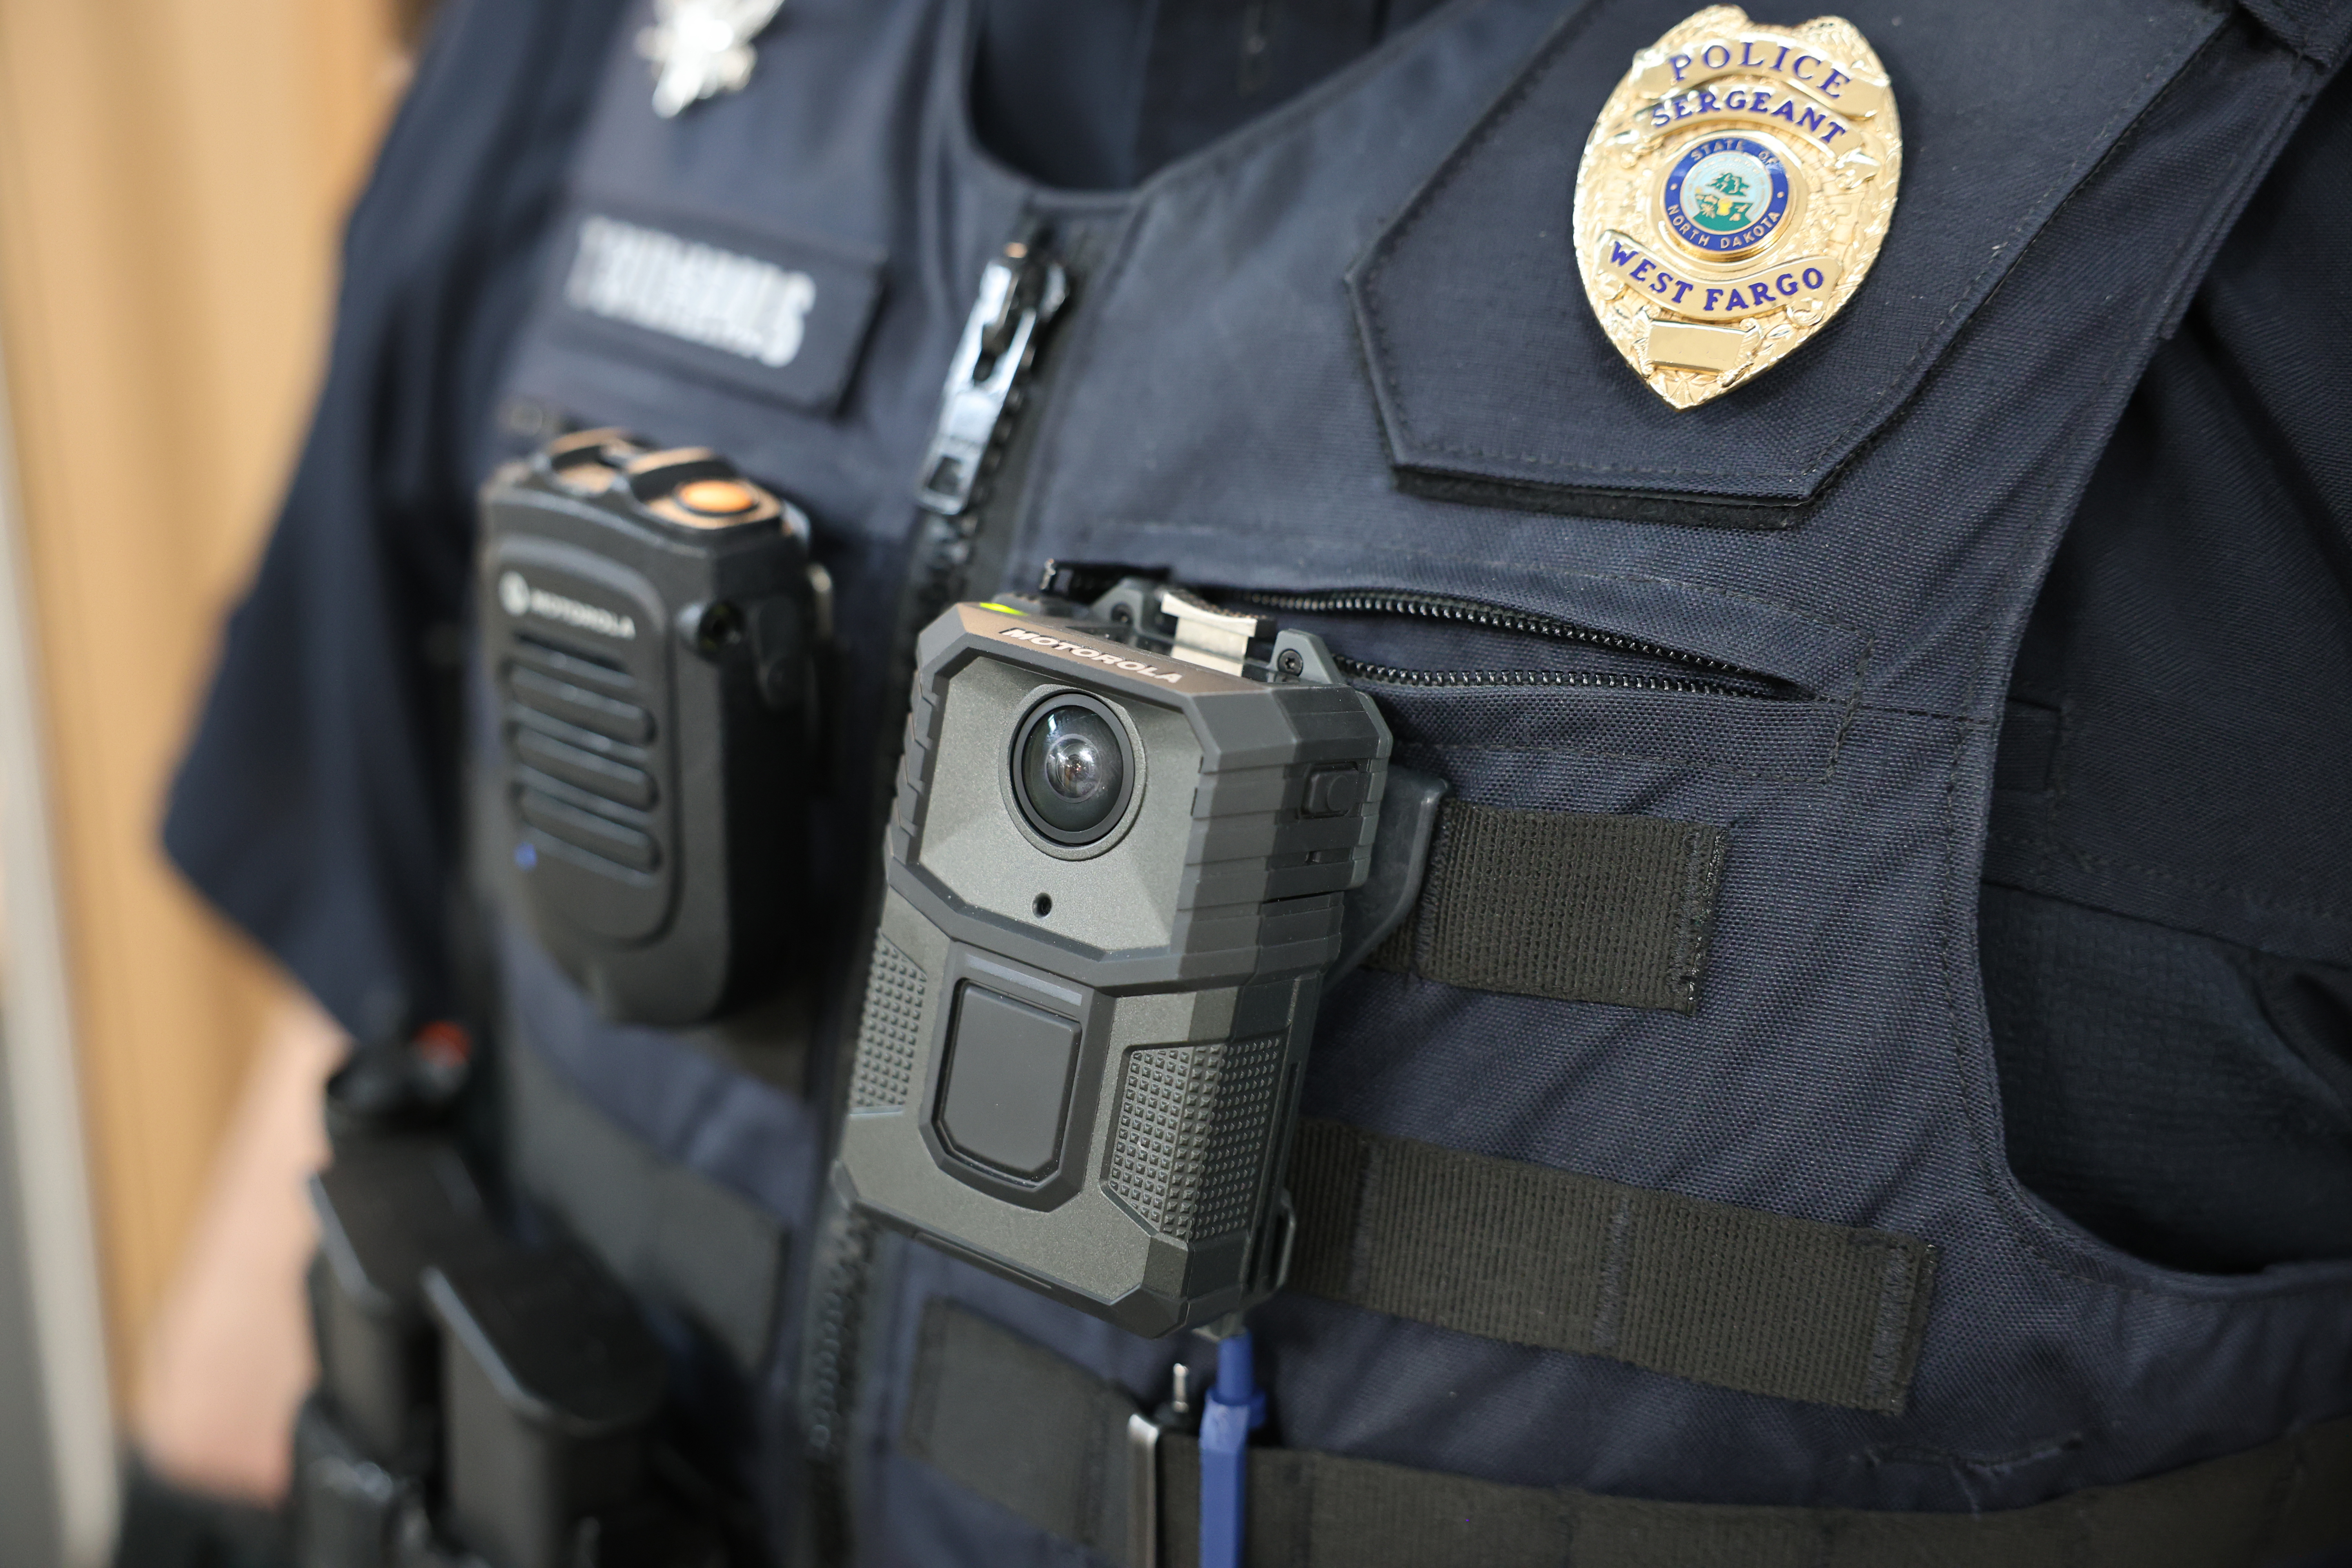 Police use AI to analyze body cam audio